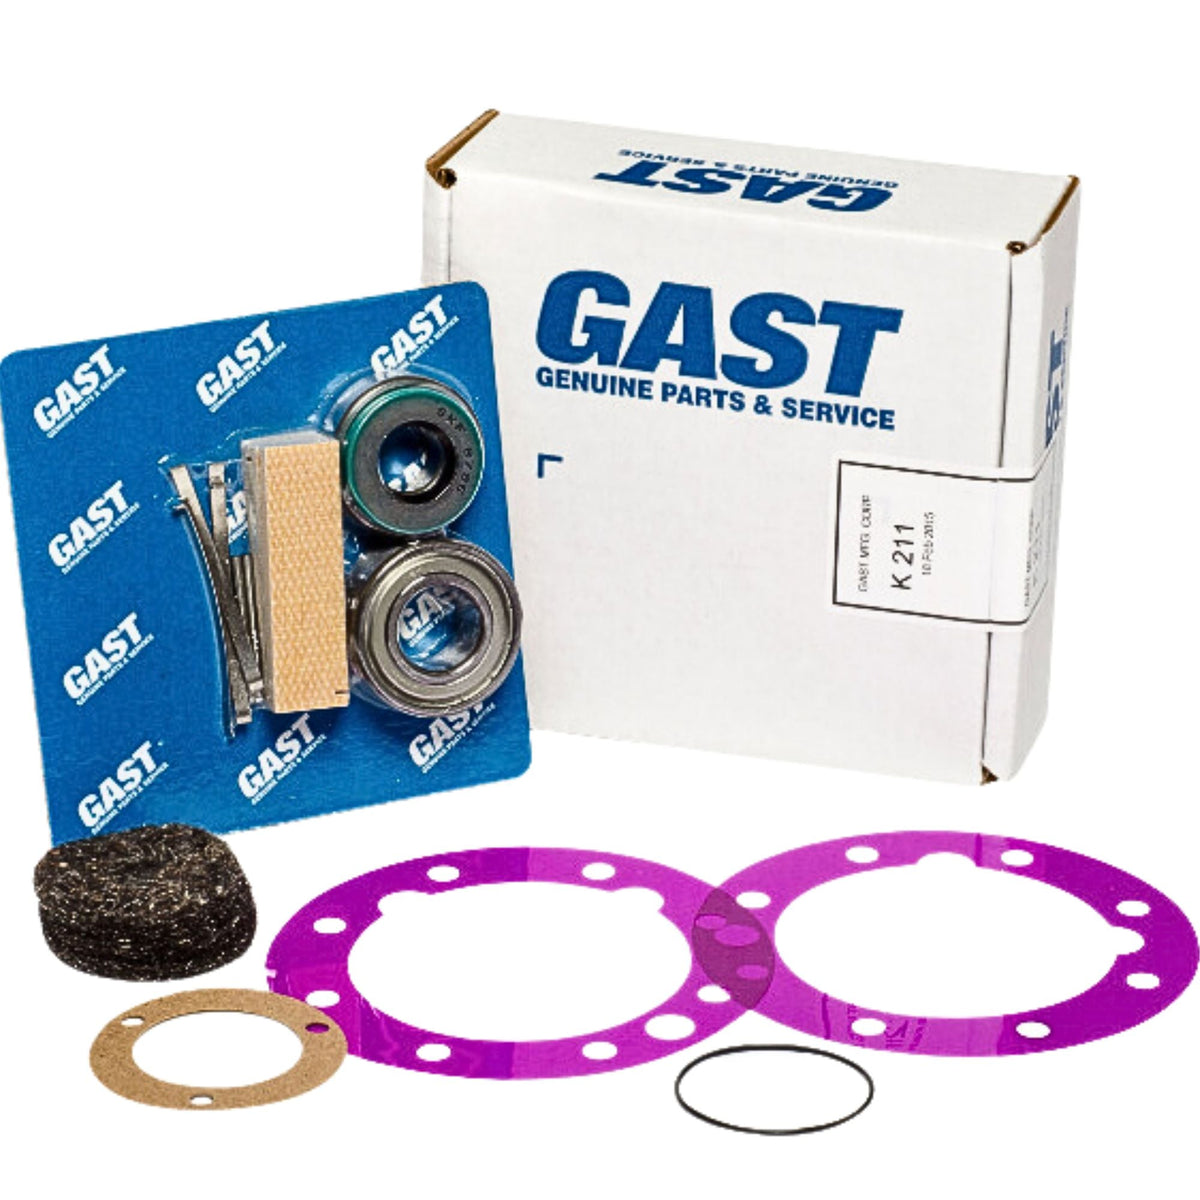 Gast | 8AM Service Kit (4 vane) | K211 used on gast product line